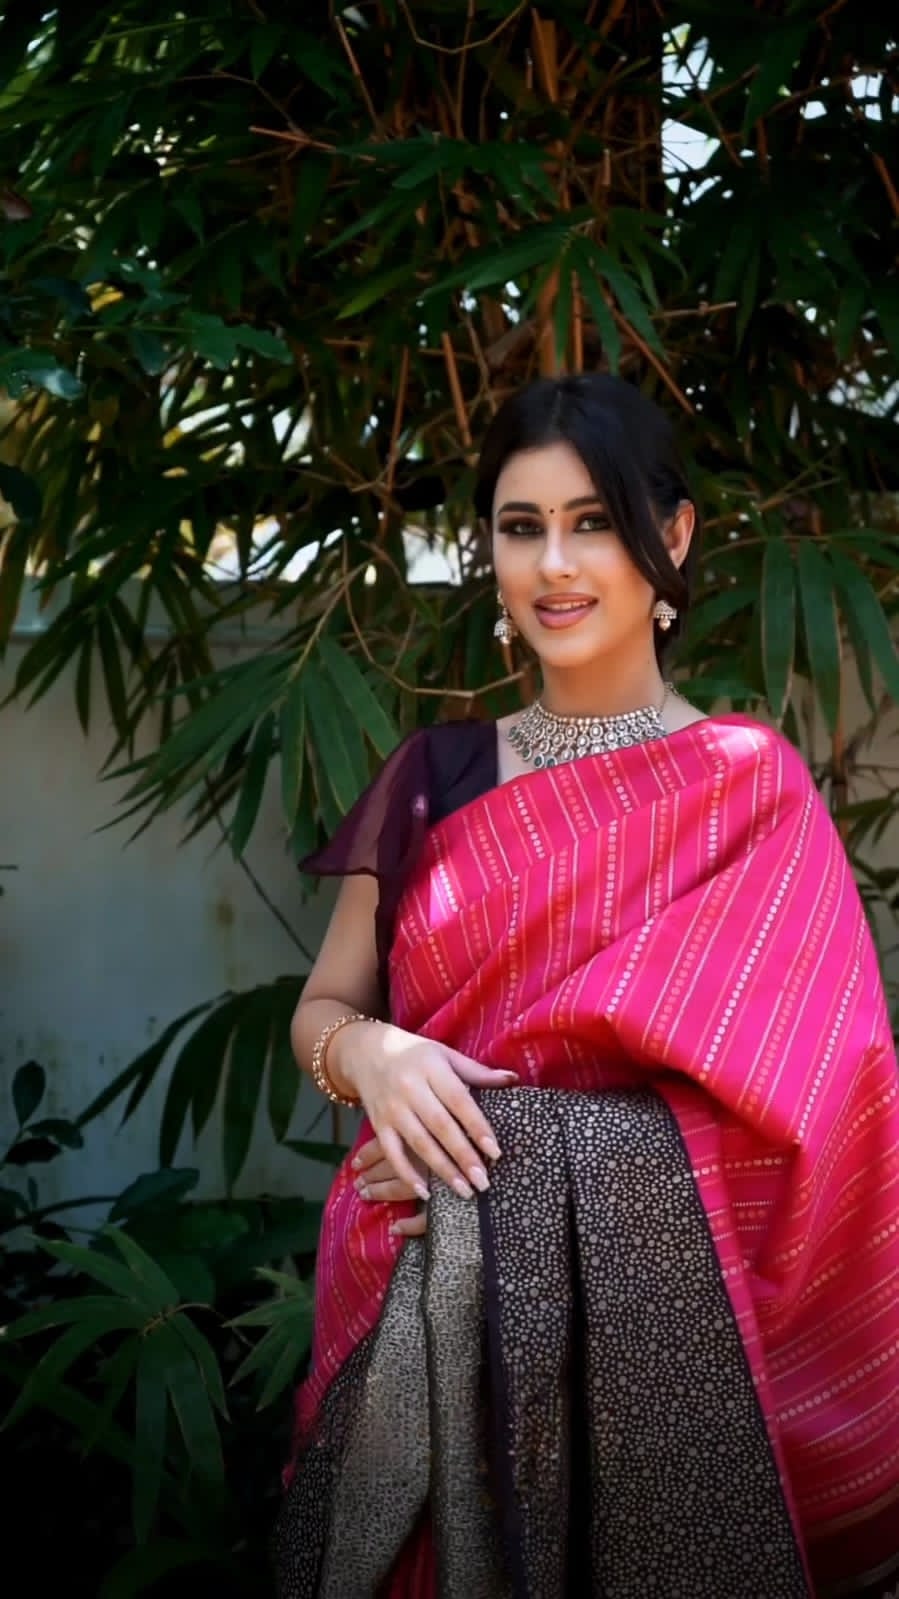 Jayalakshmi Silks - Black saree with Pink blouse. | Facebook